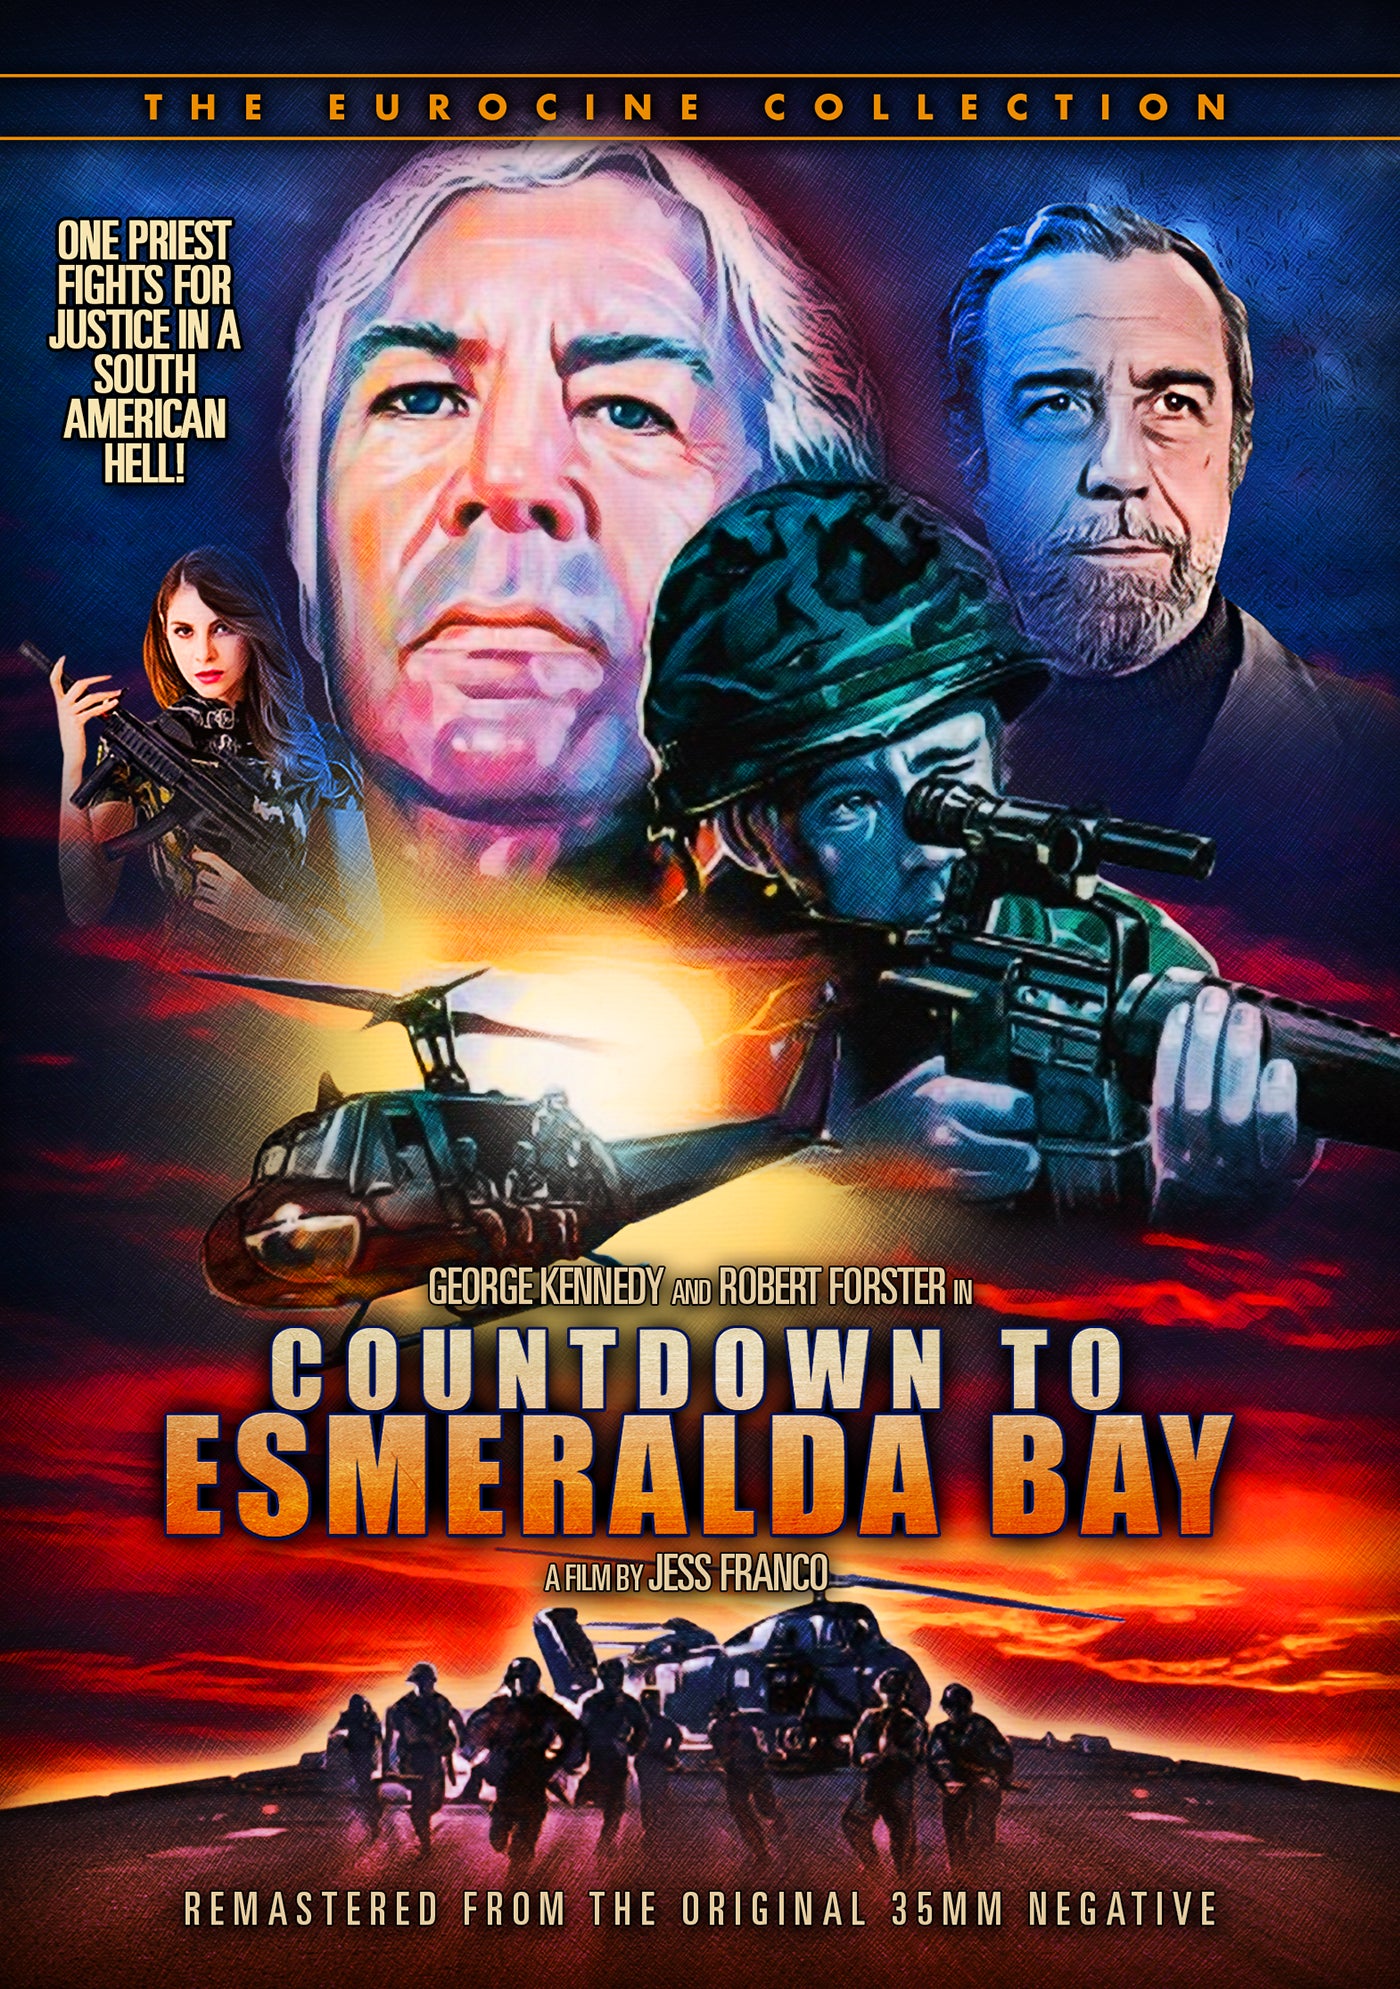 Countdown to Esmeralda Bay cover art